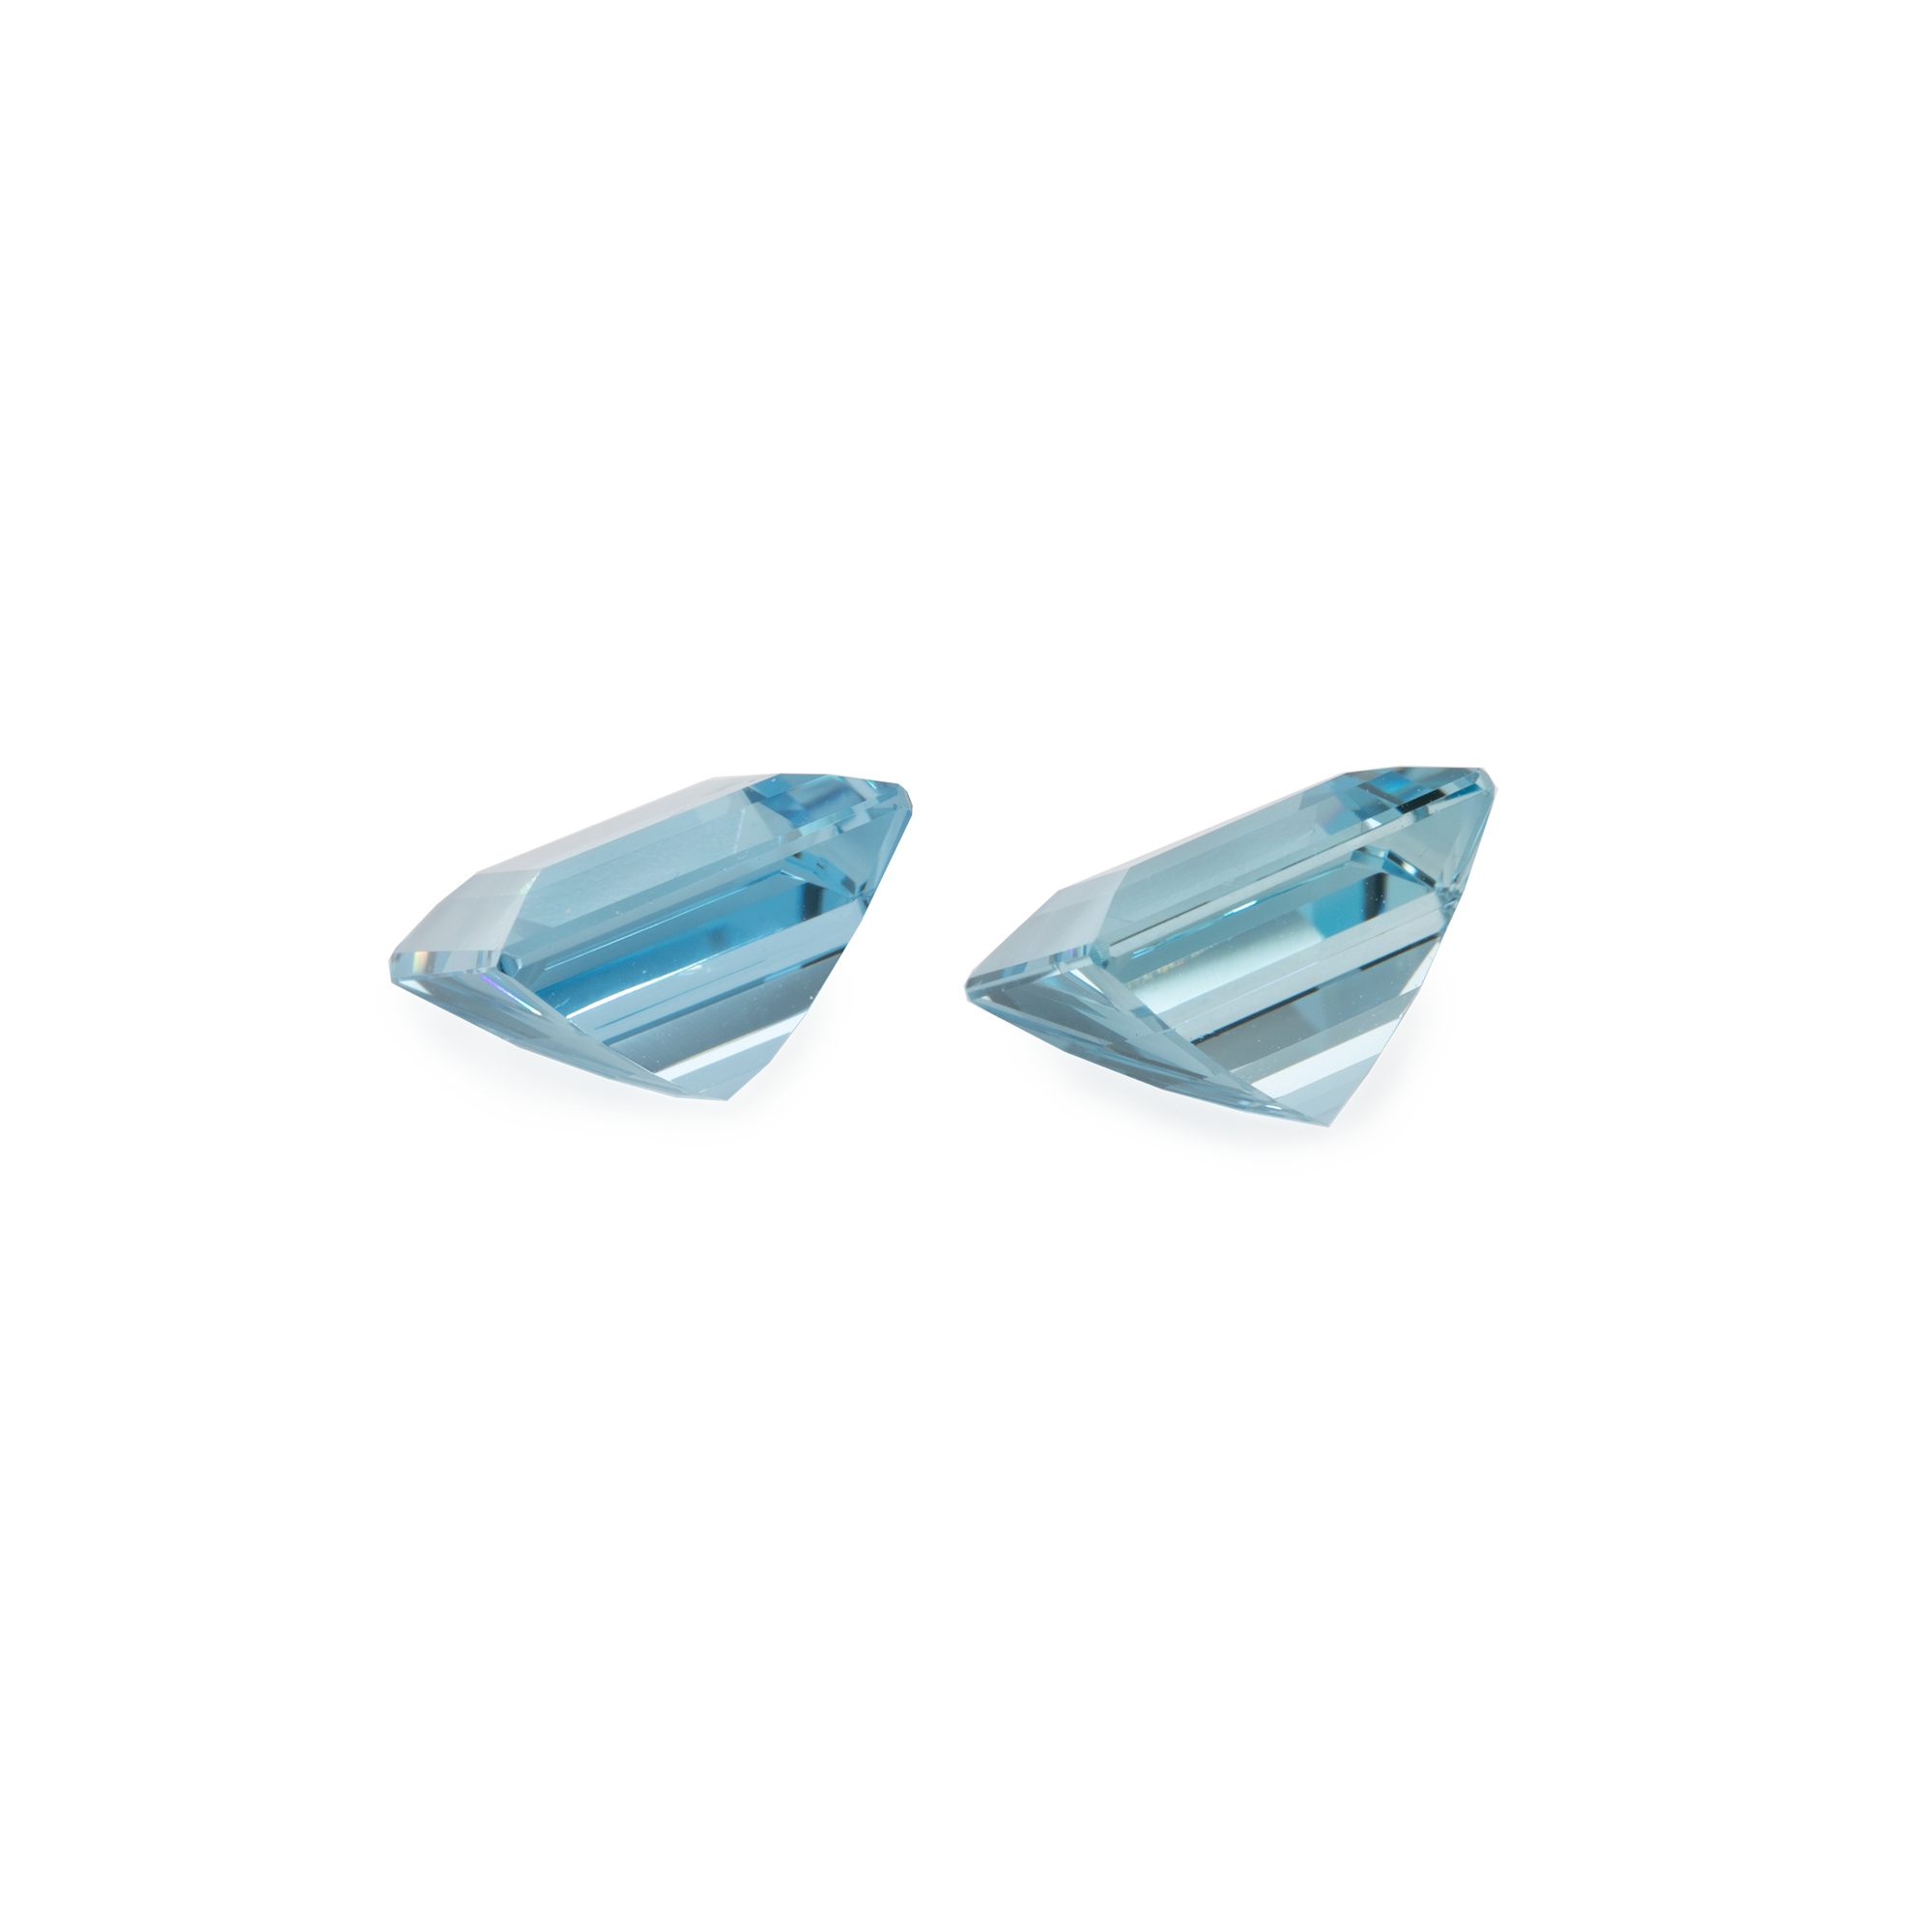 Aquamarine Pair - A, octagon, 10x10 mm, 8.60 cts, No. A74001